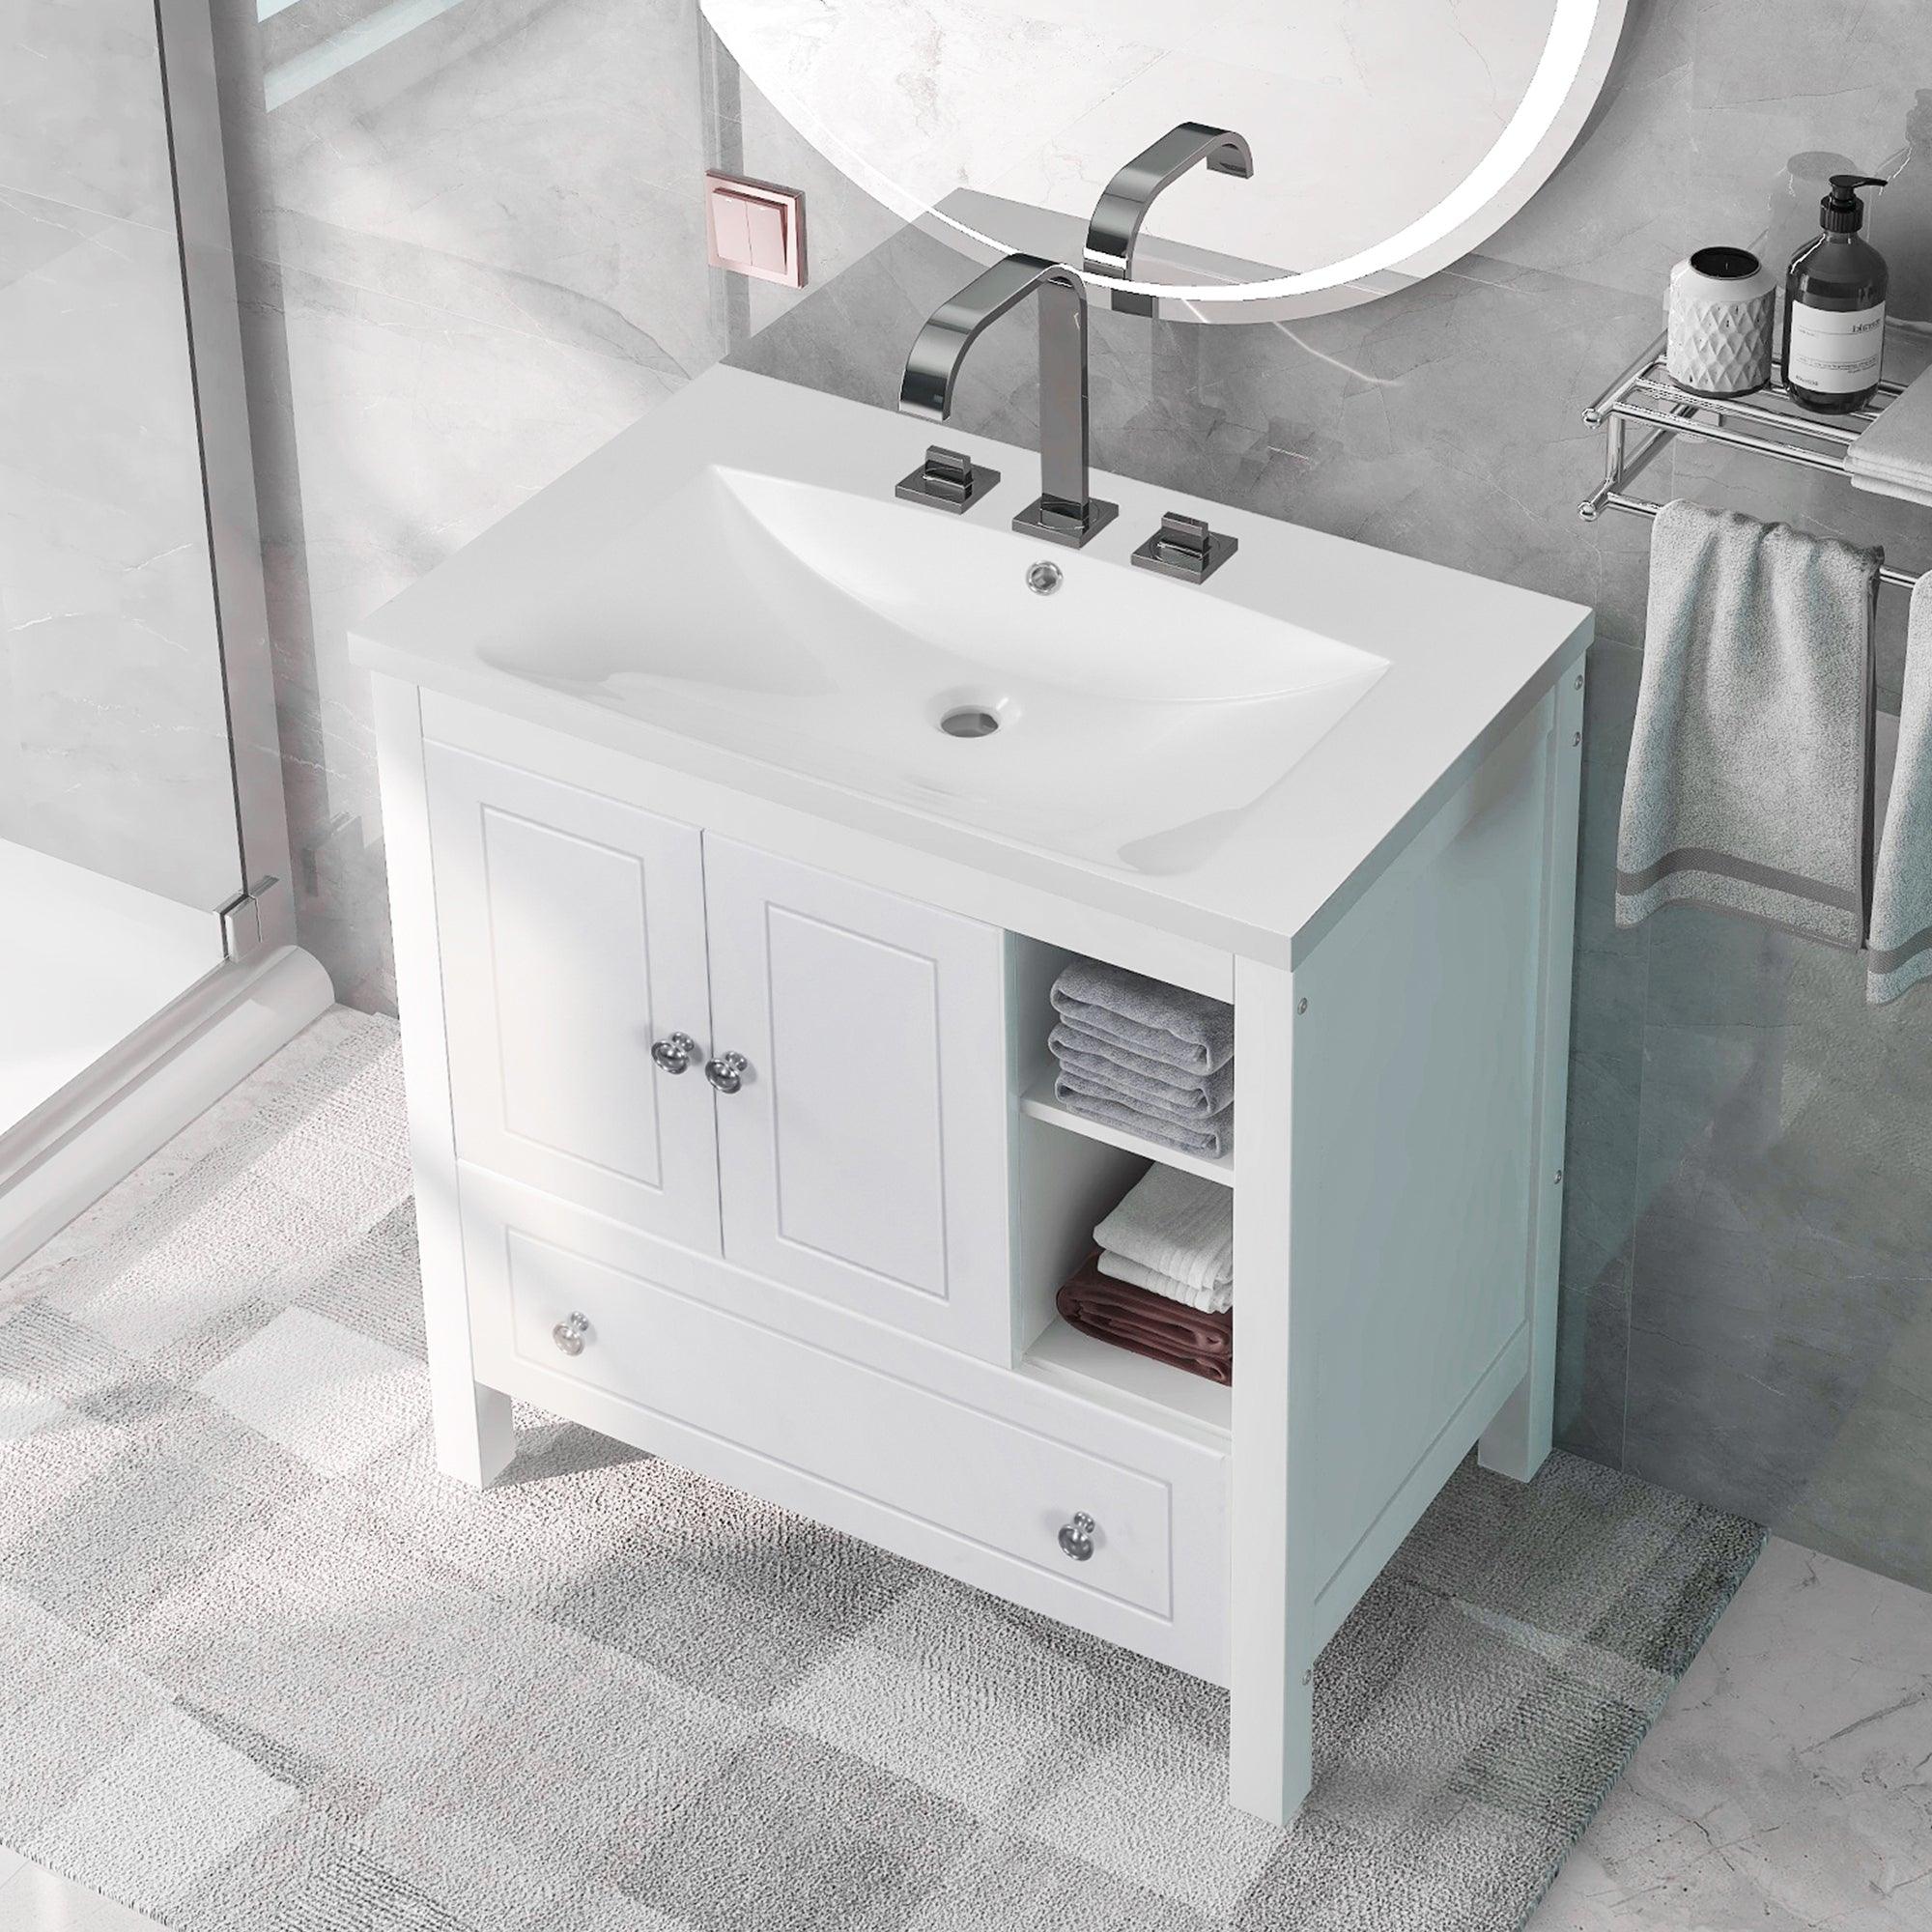 🆓🚛 30" Bathroom Vanity With Sink, Bathroom Storage Cabinet With Doors & Drawers, Solid Wood Frame, Ceramic Sink, White